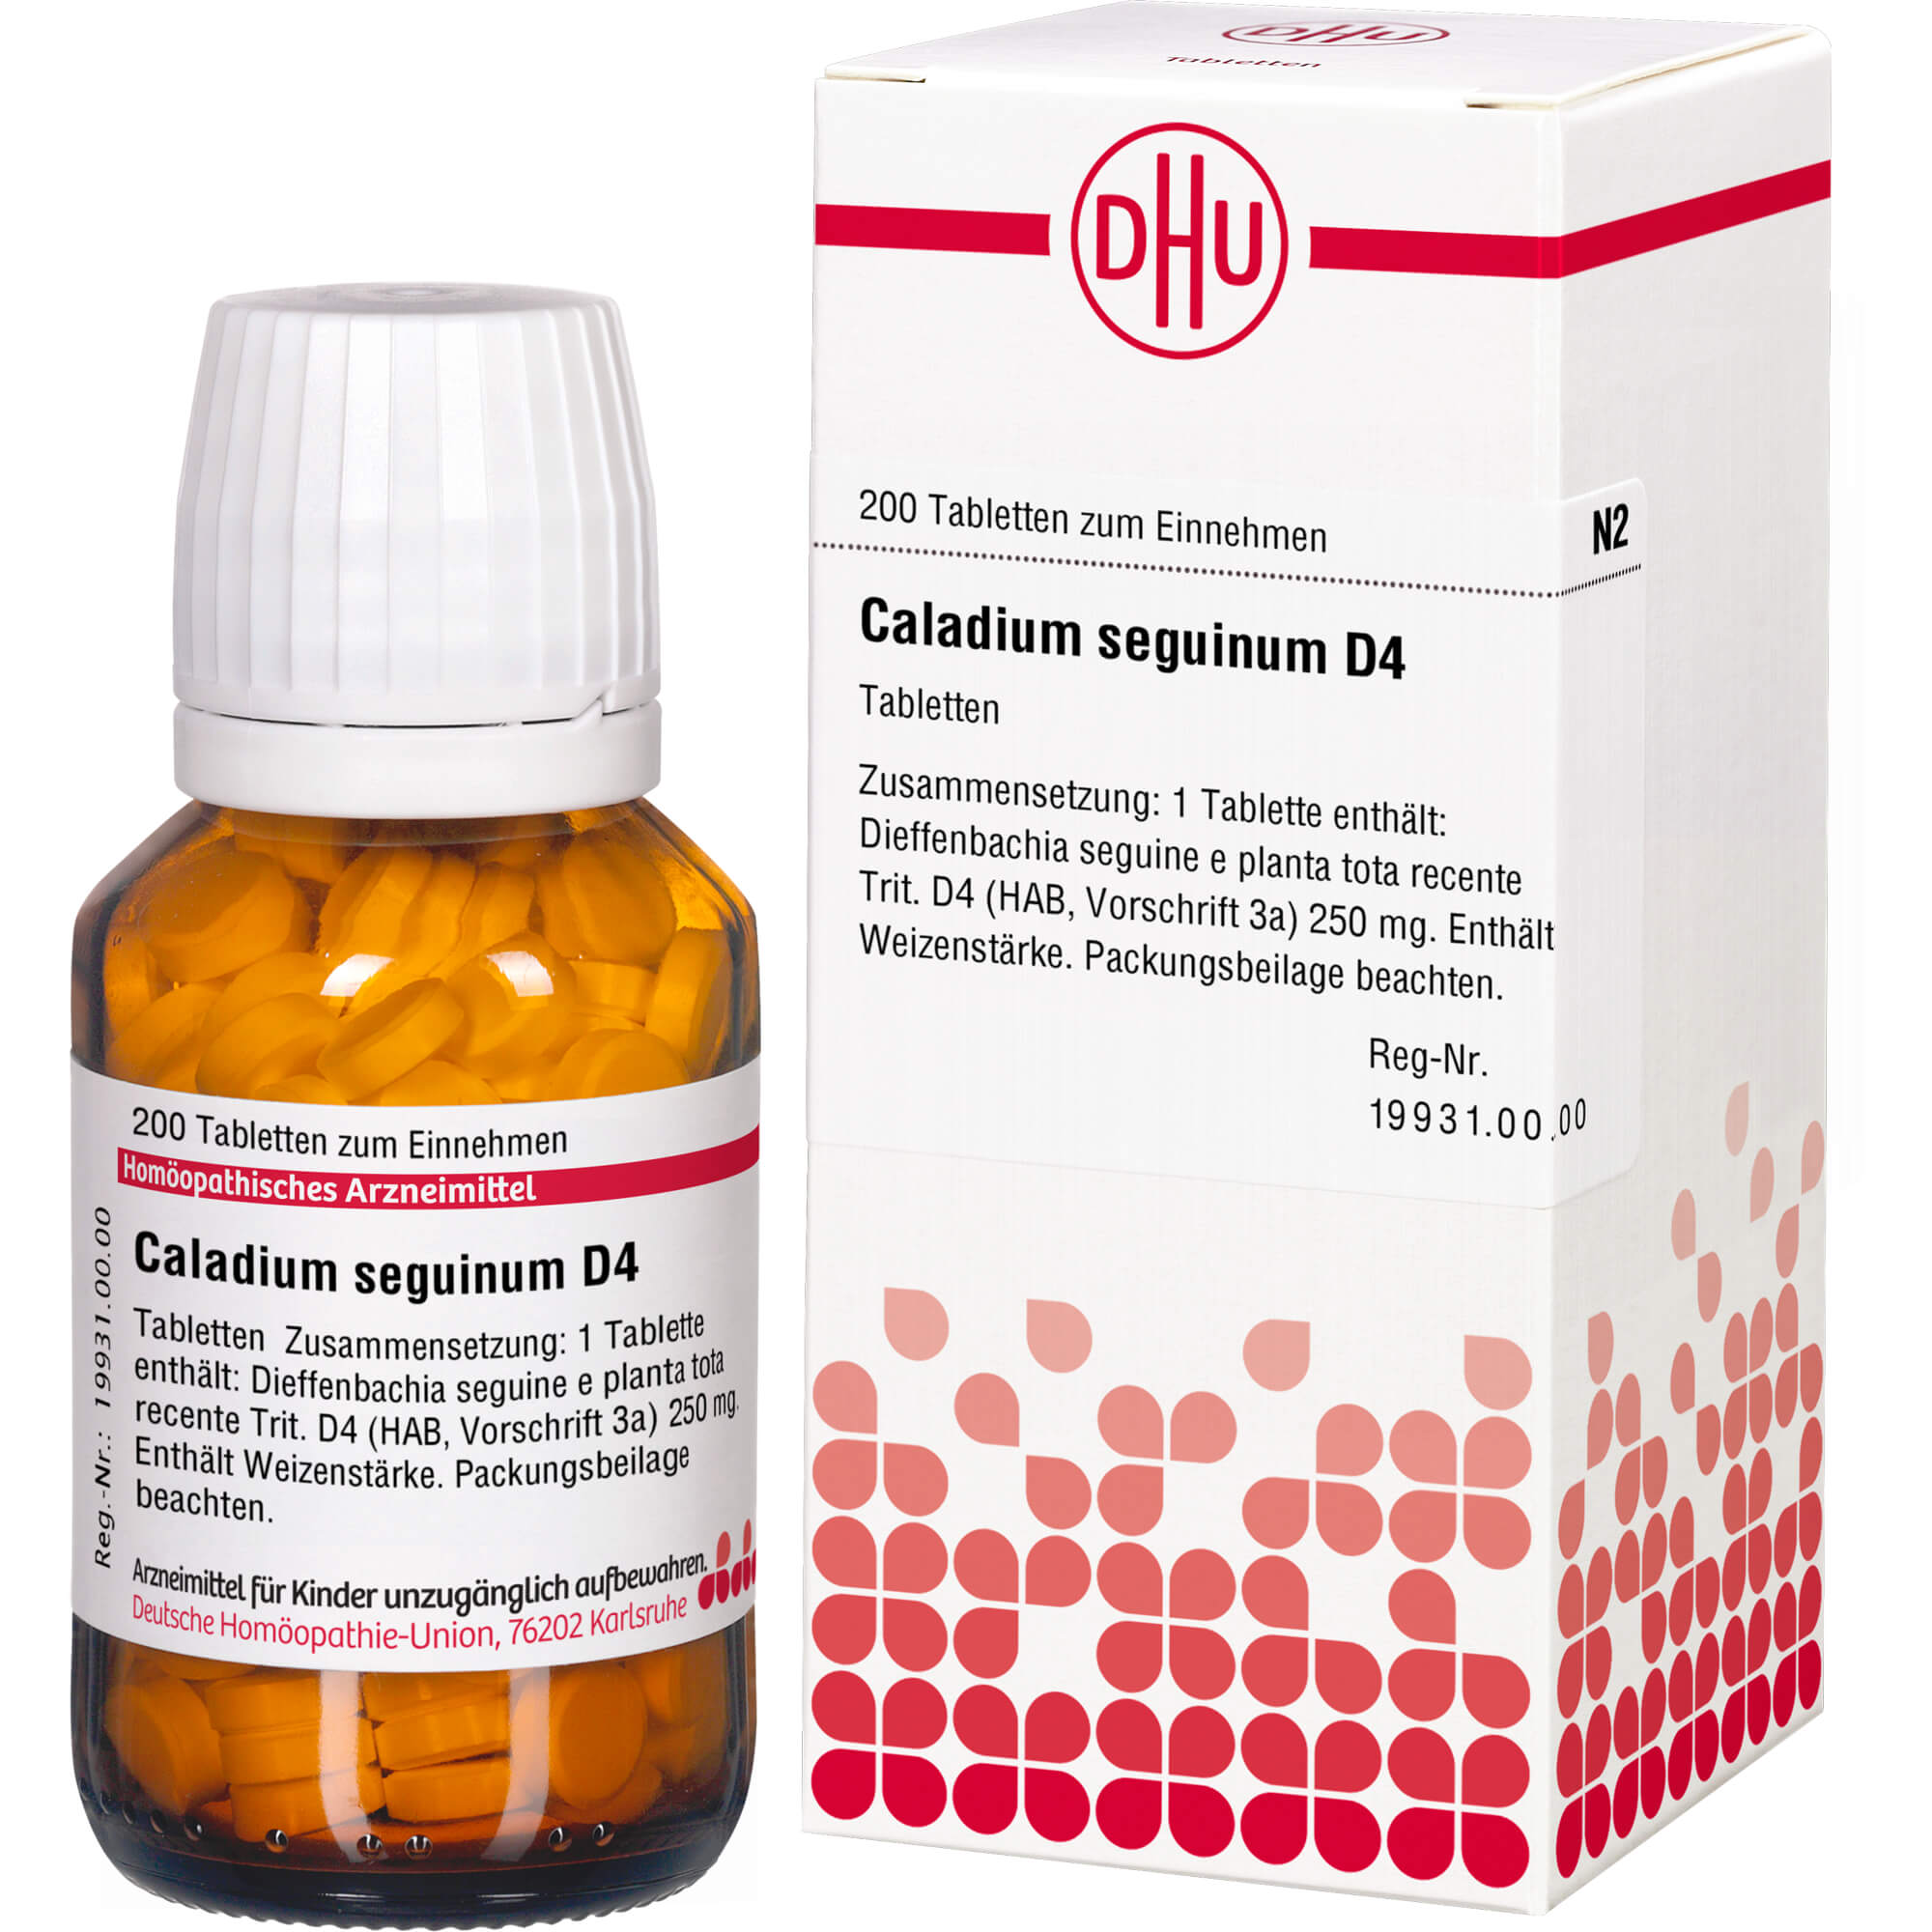 CALADIUM seguinum D 4 Tabletten